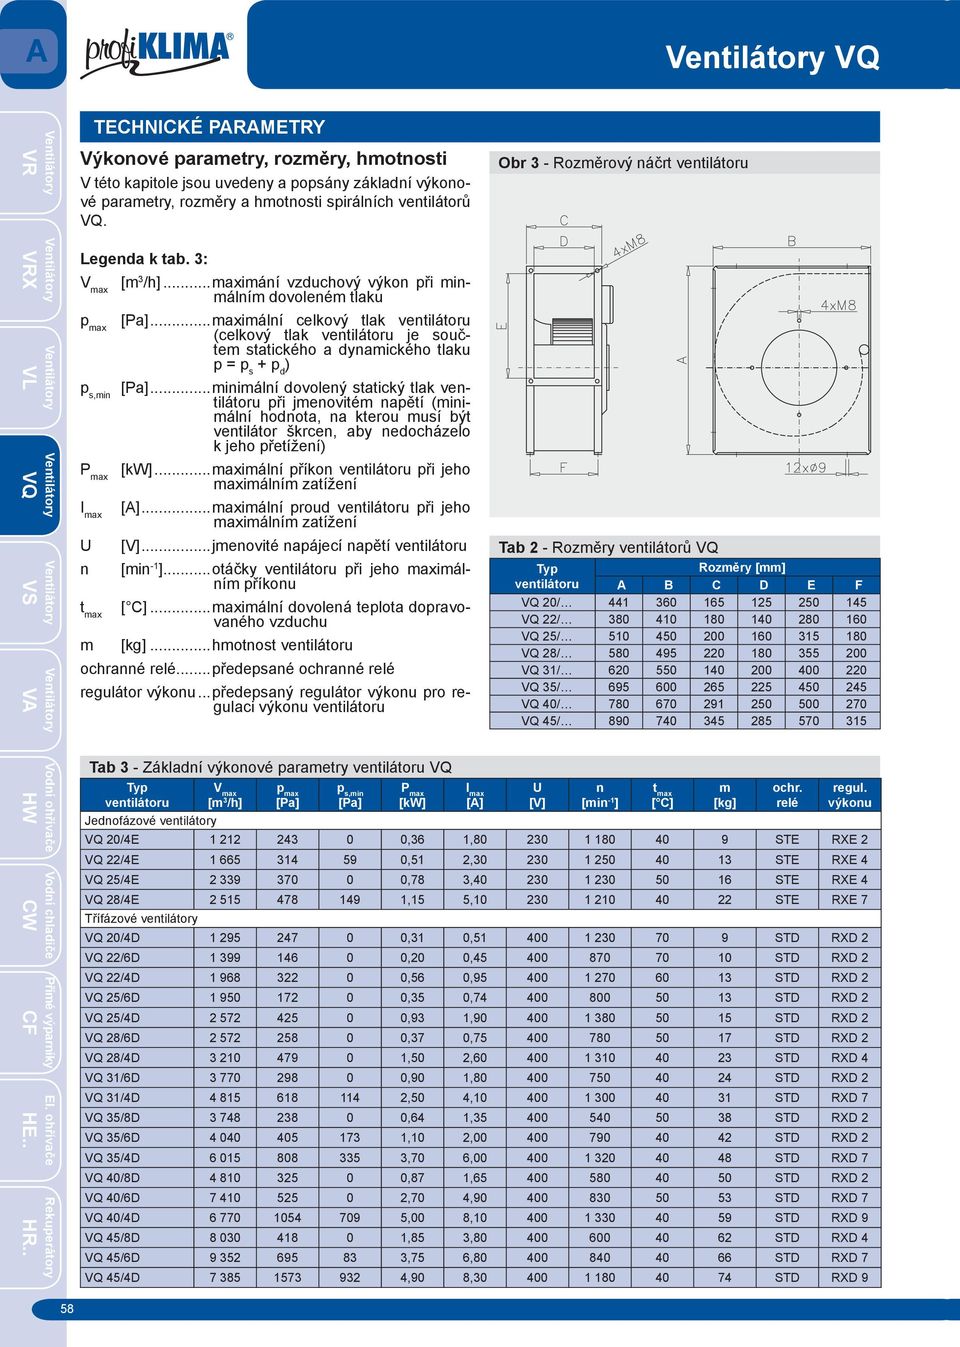 ..minimální dovolený statický tlak ventilátoru při jmenovitém napětí (minimální hodnota, na kterou musí být ventilátor škrcen, aby nedocházelo k jeho přetížení) P max [kw].